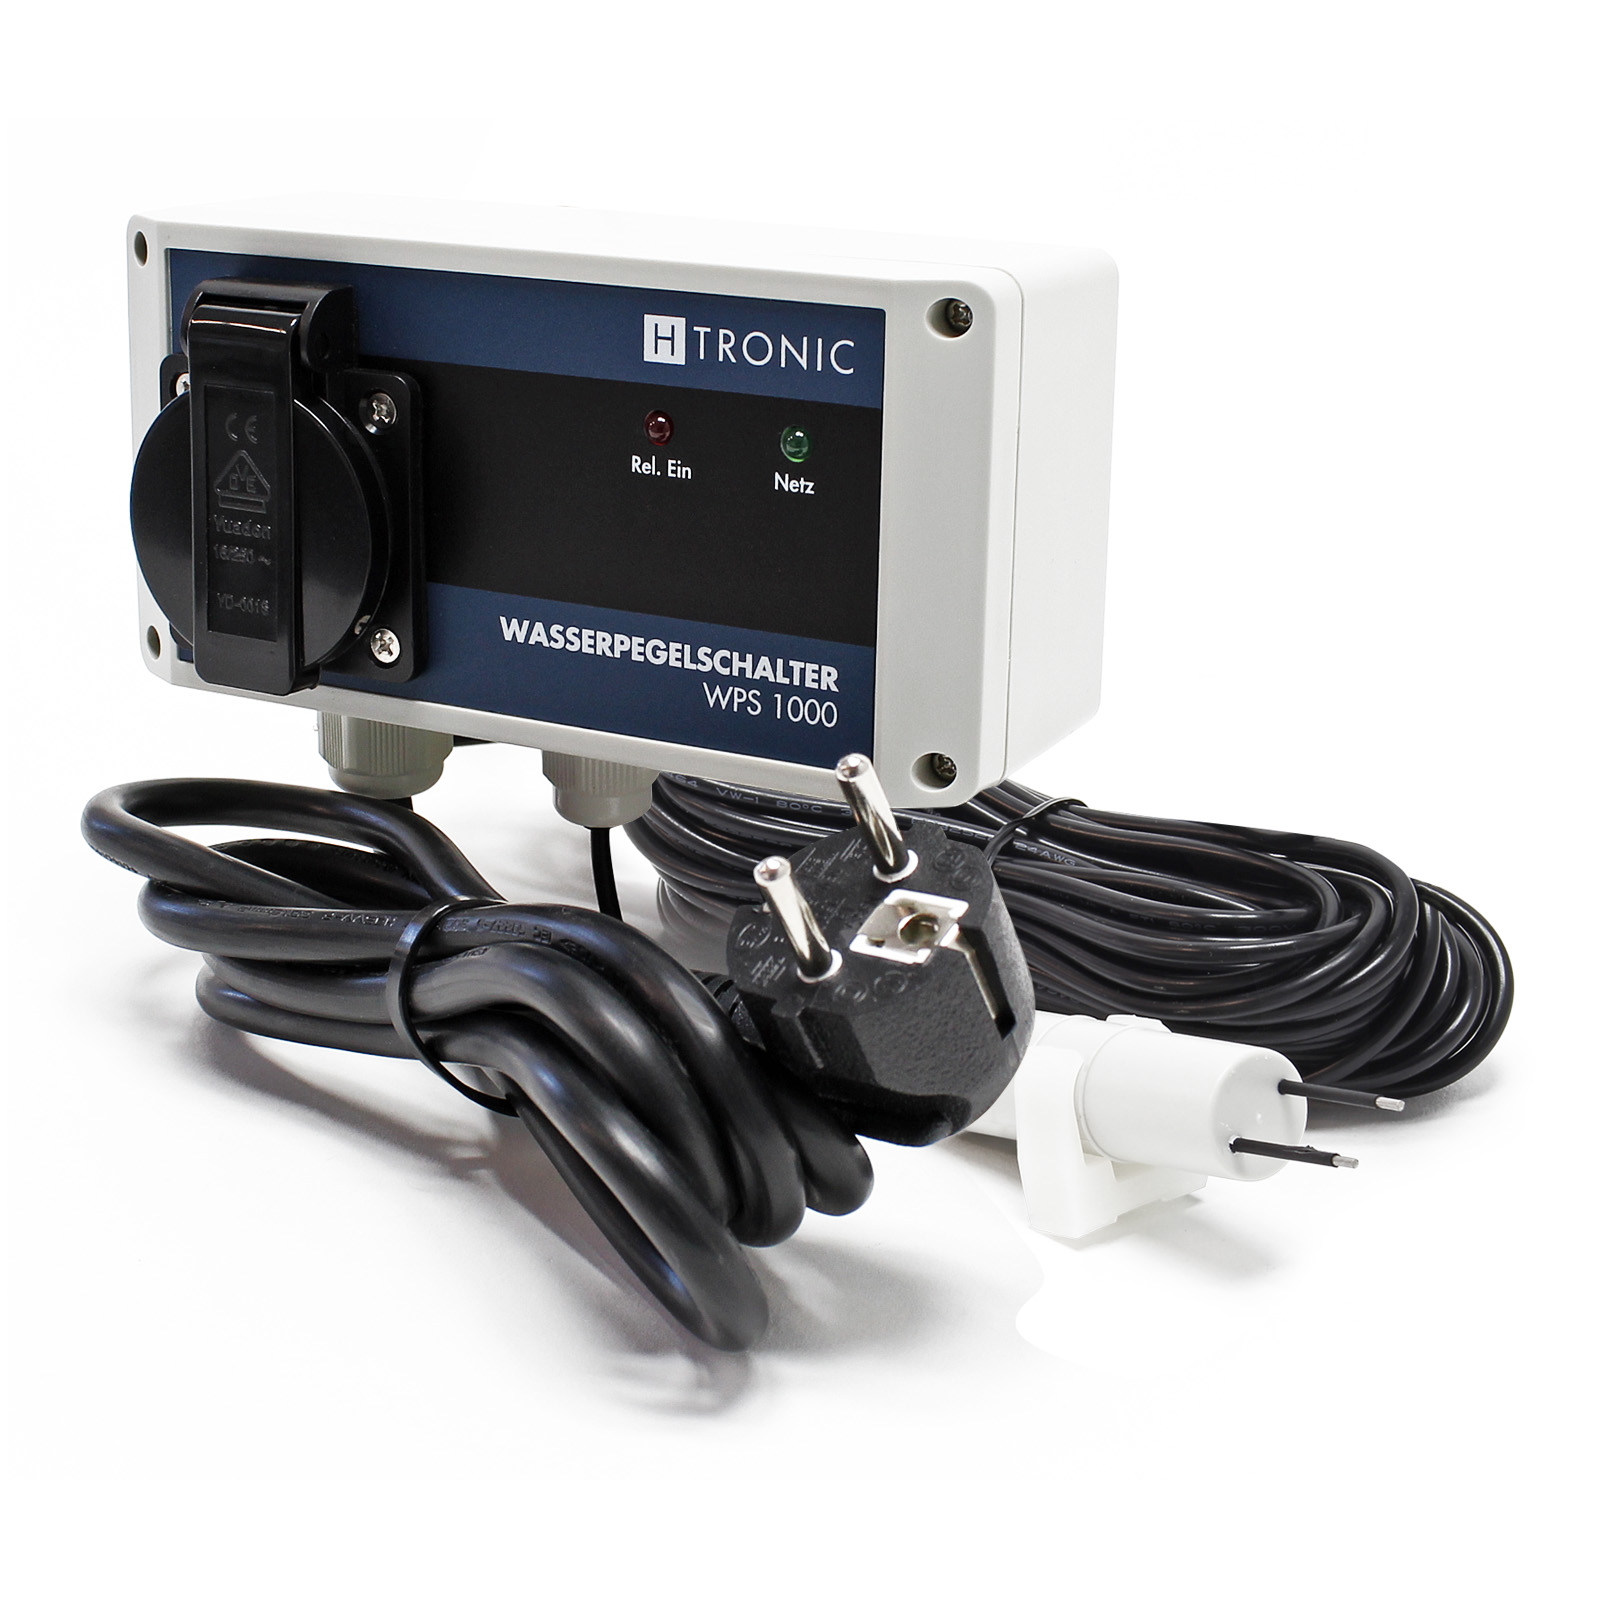 H-Tronic WPS 1000 Wasserpegelschalter V2 Wassersensor 10m Sensor 3000W